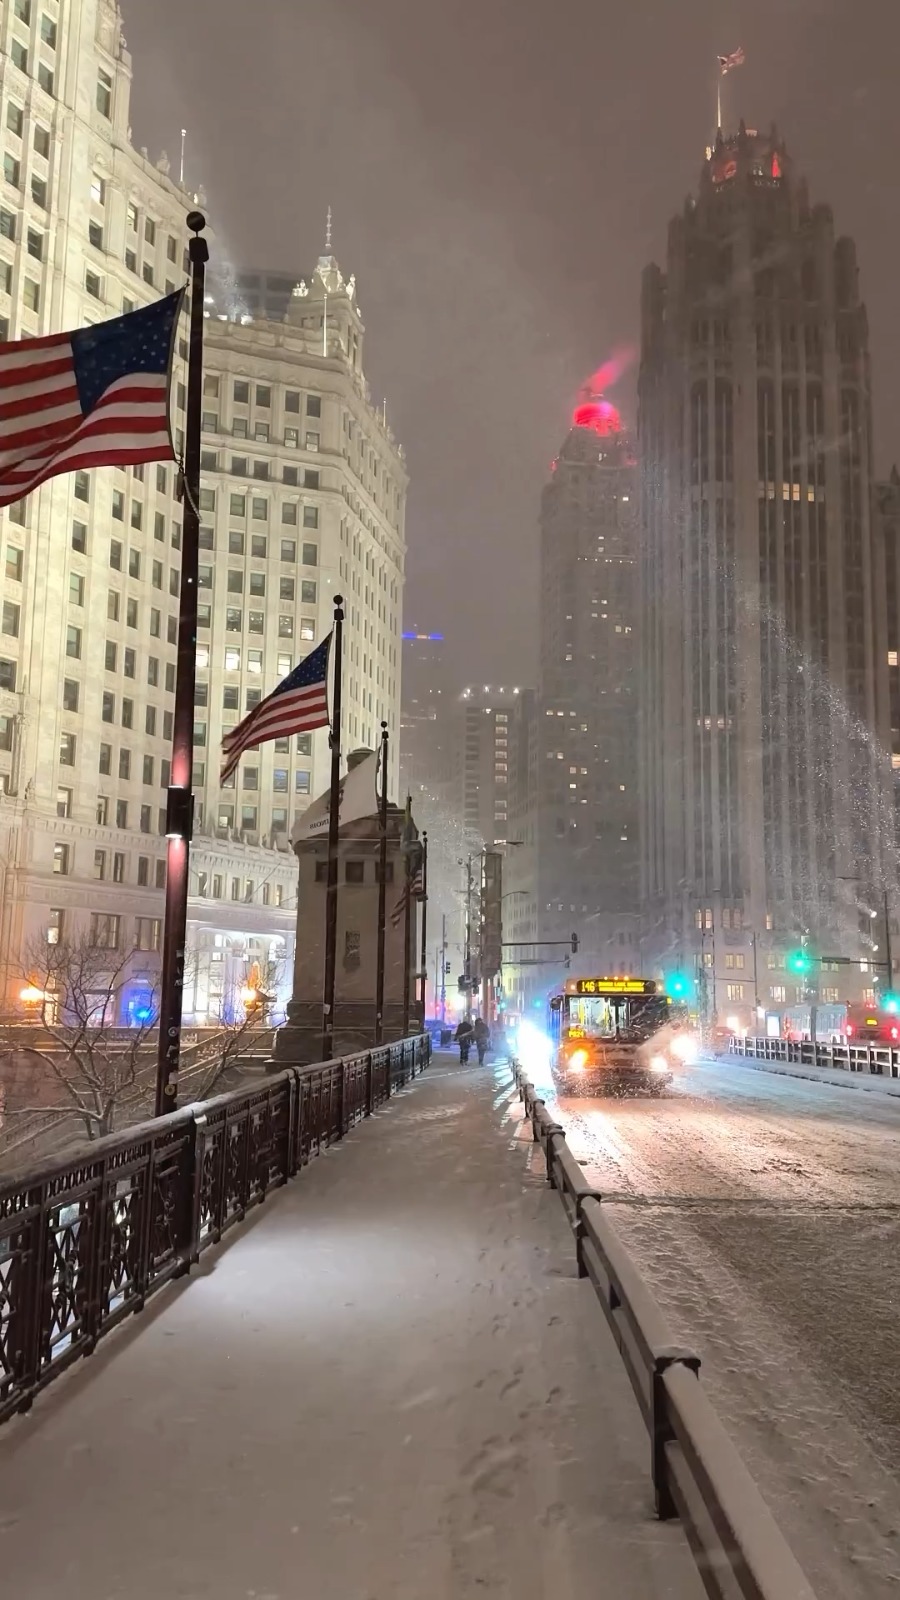 Chicago 🇺🇸♥️❄️ a winter wonderland night